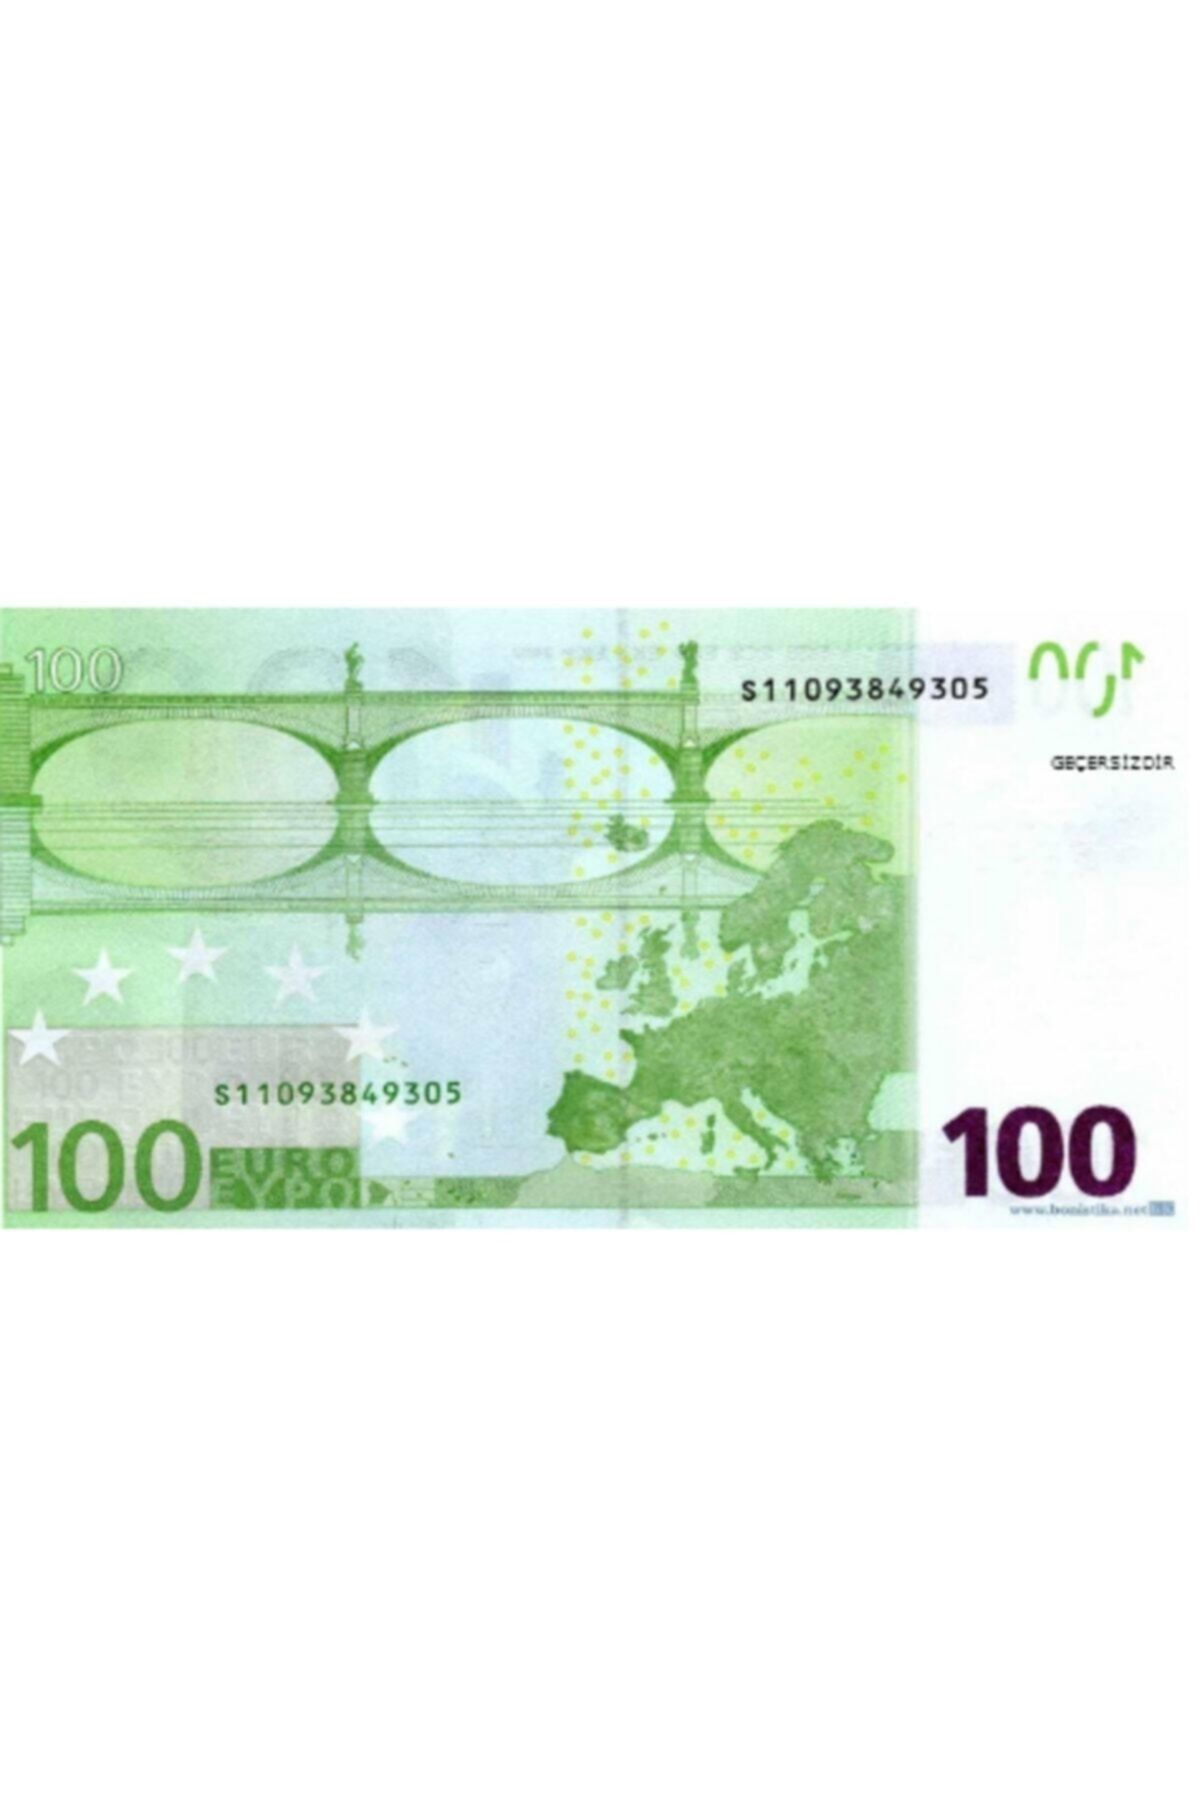 120 евро сколько. 100 Euro в Турции. Стоят ли в очках за 100 евро стёкла.